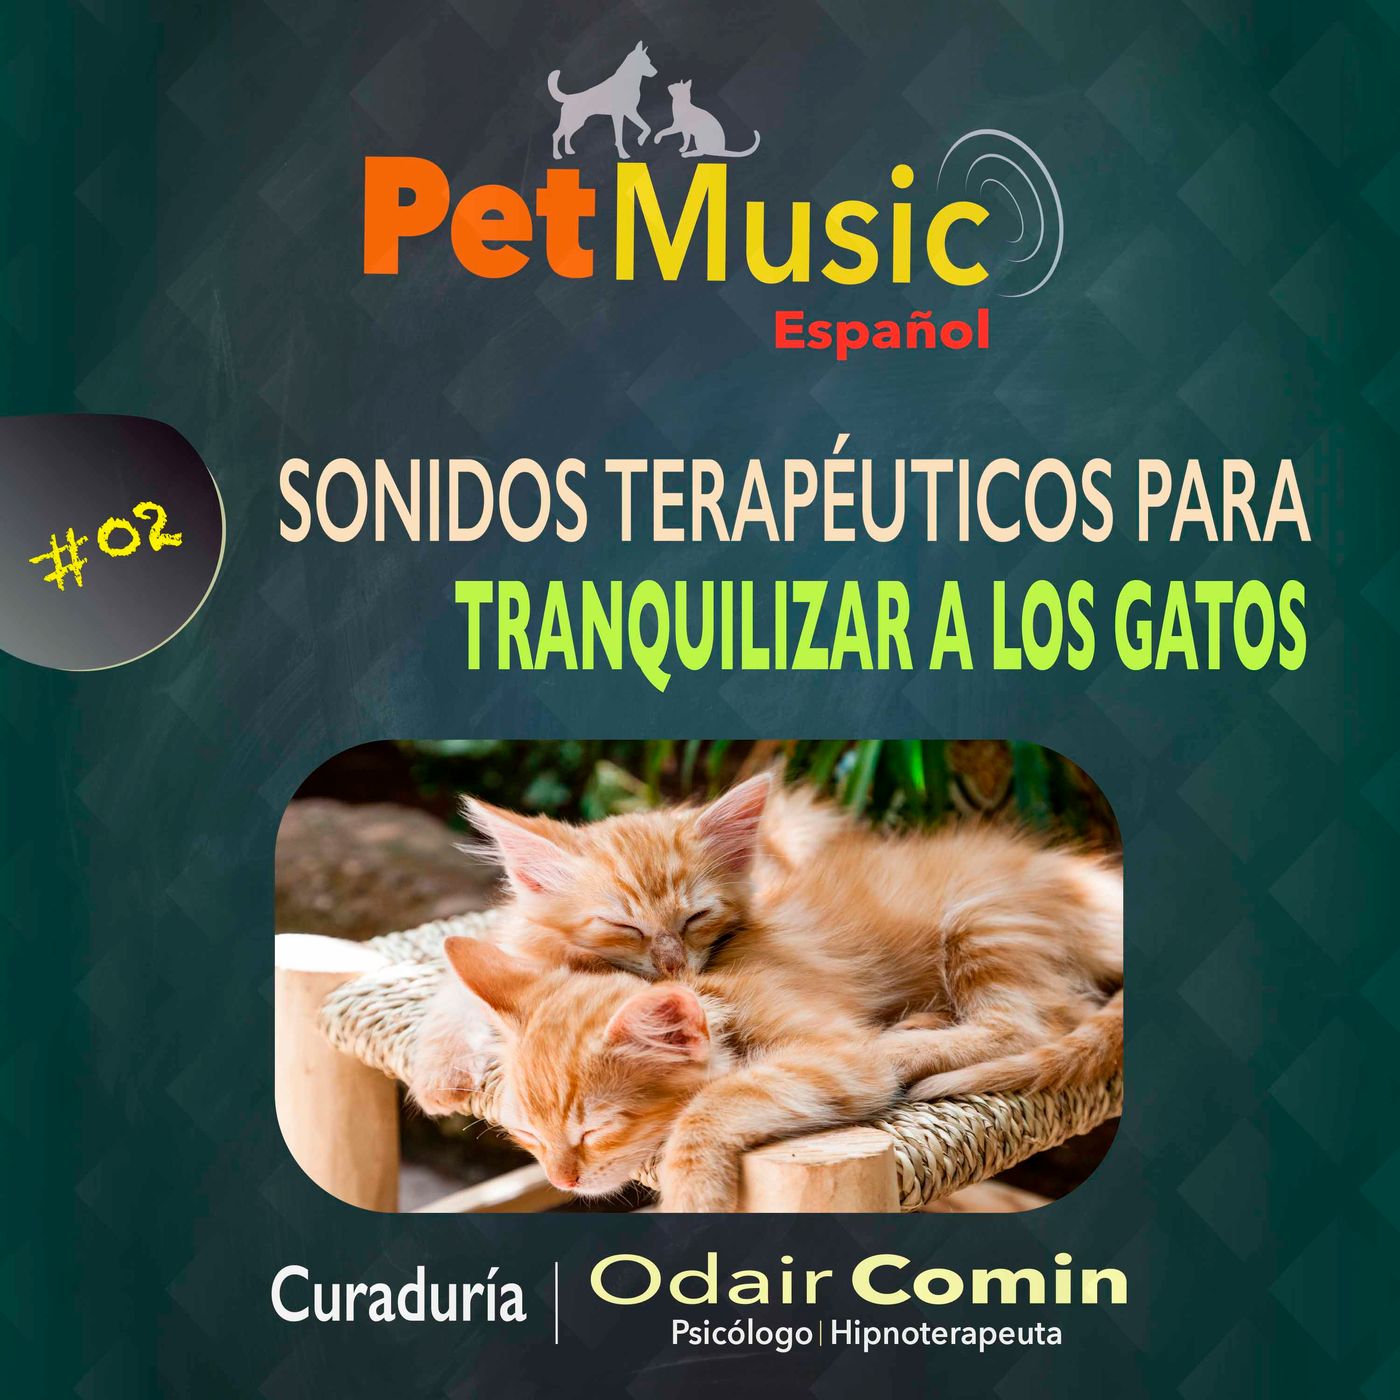 #02 Sonidos Terapéuticos para Tranquilizar Gatos | PetMusic